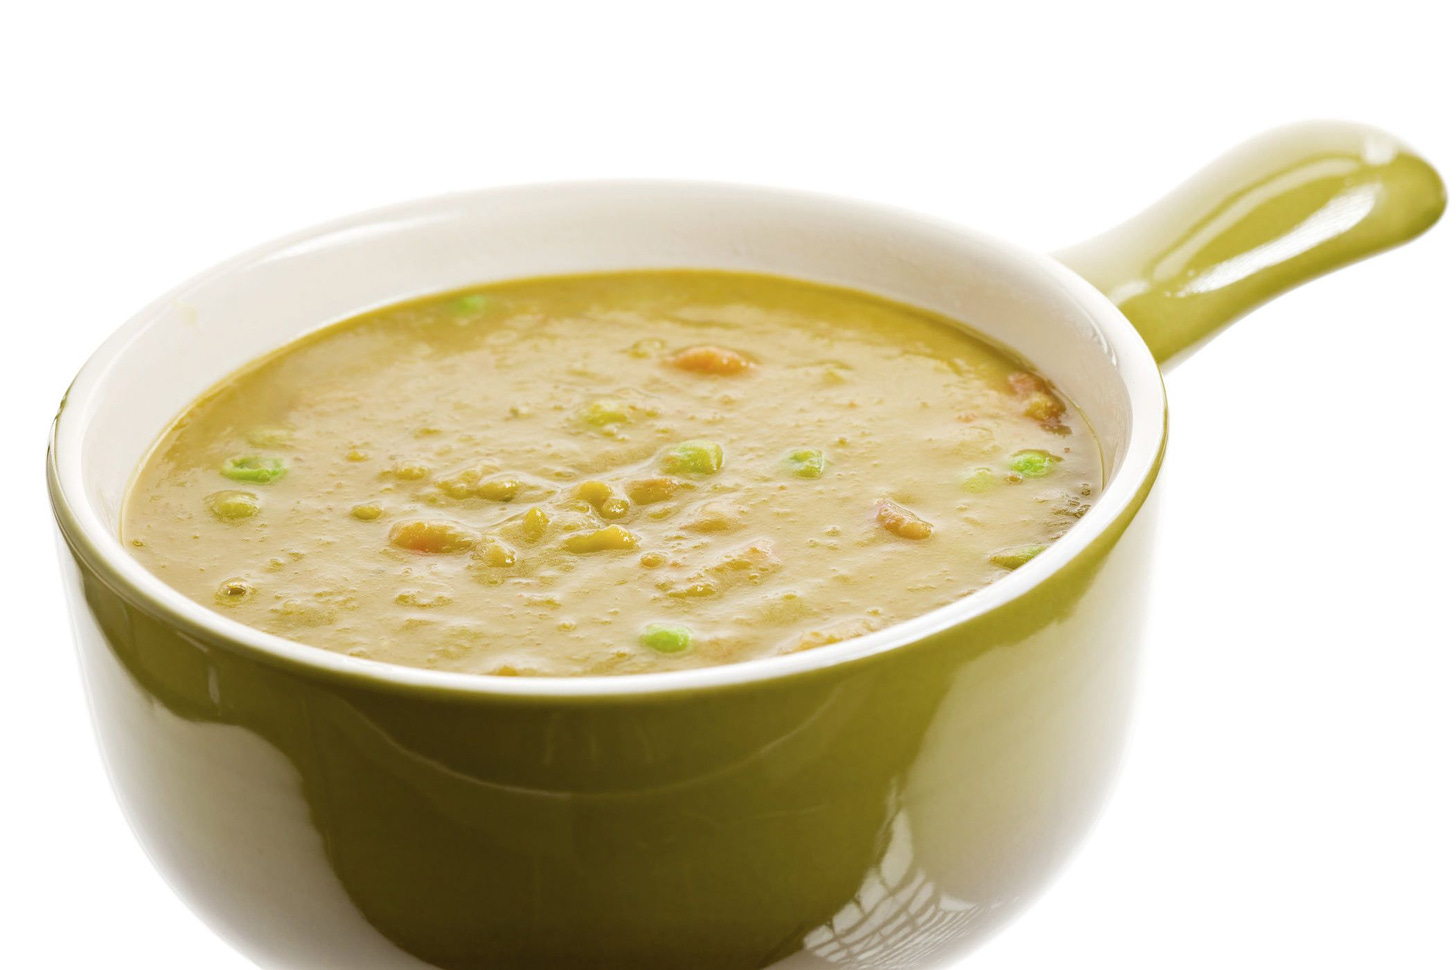 Bowl of split pea soup